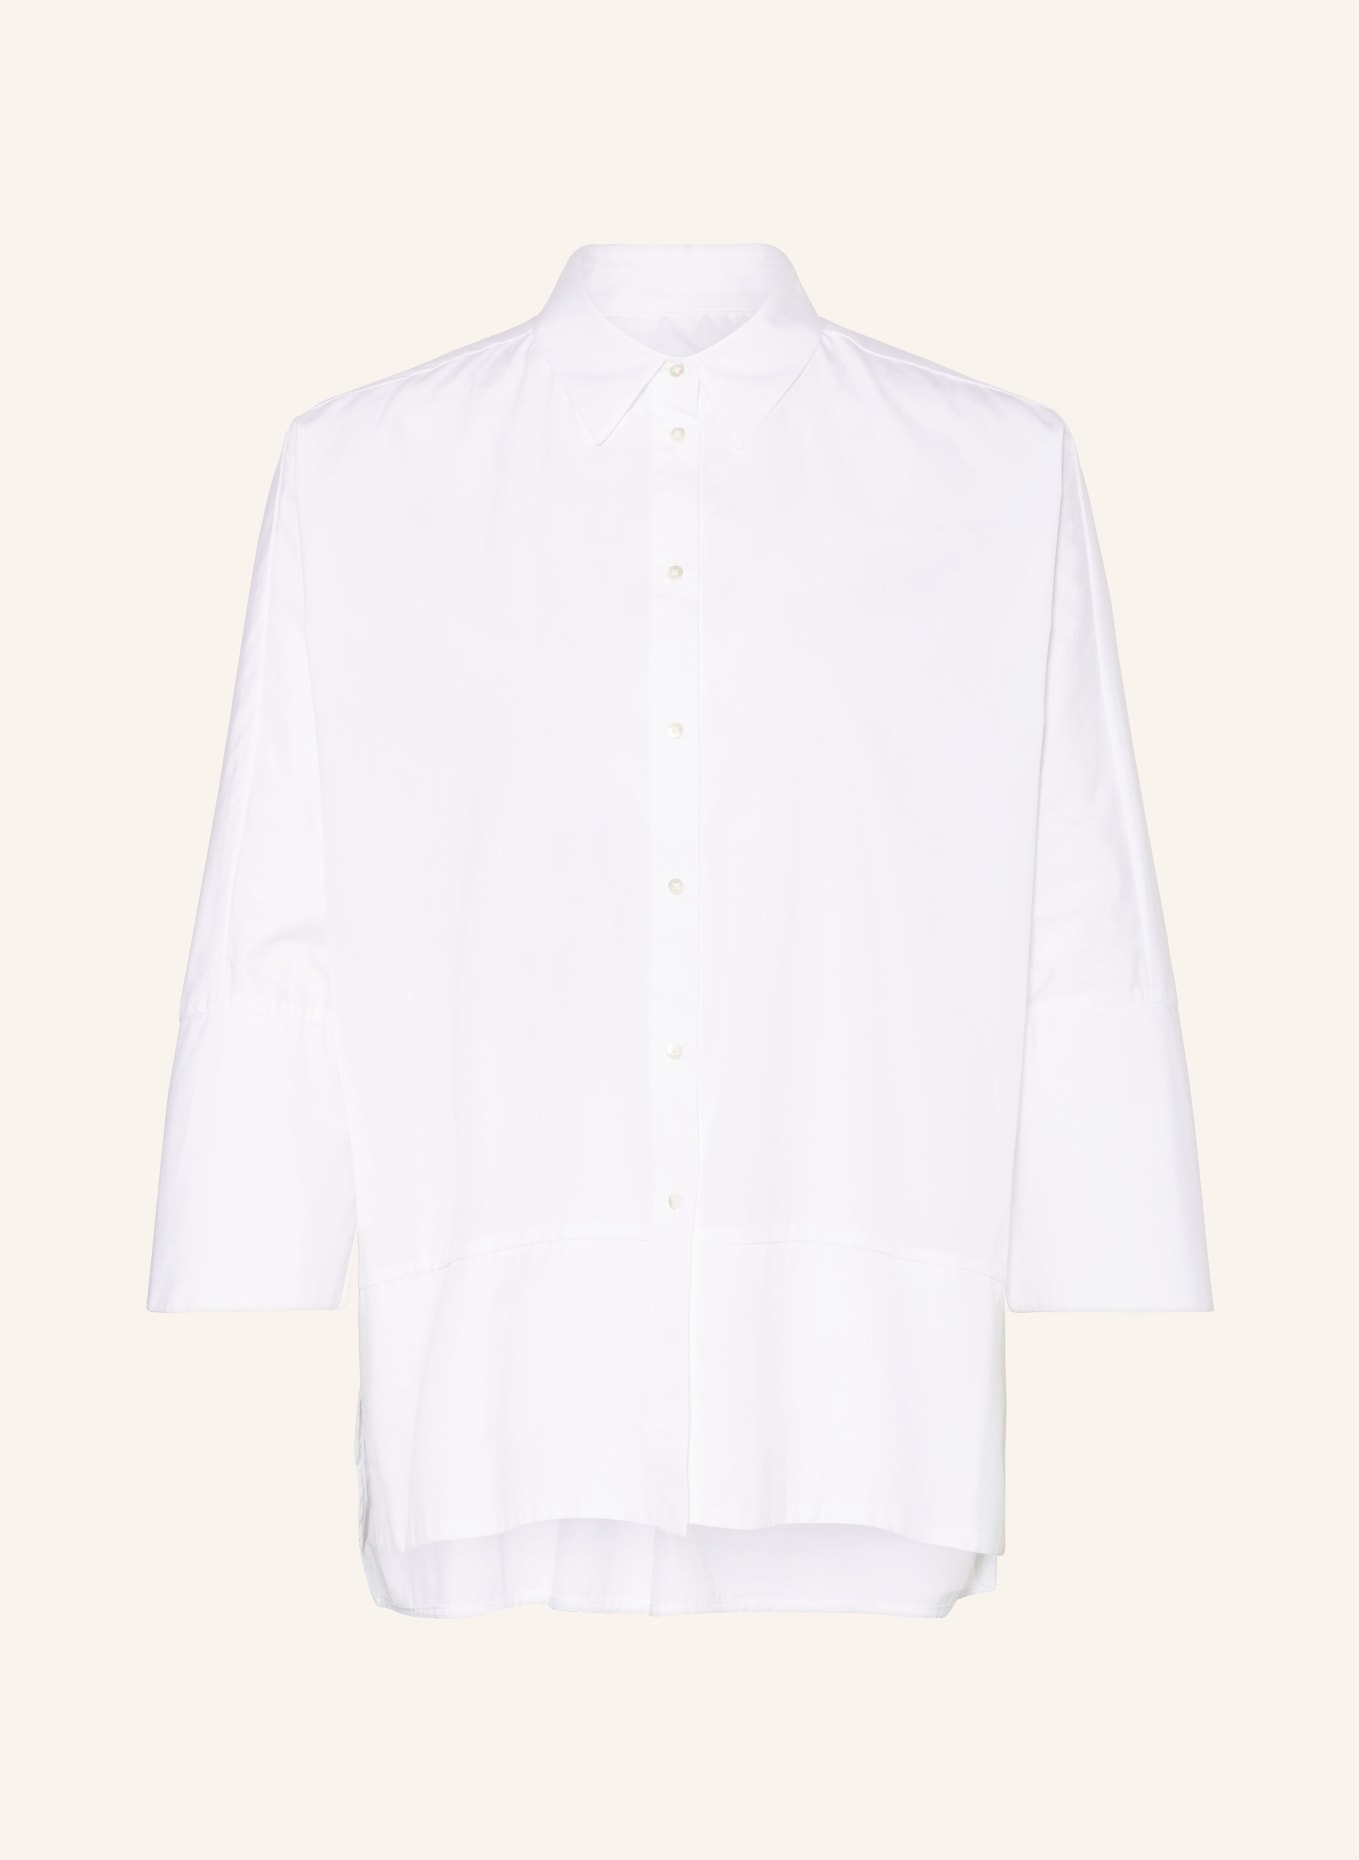 TONNO & PANNA Oversized-Hemdbluse mit 3/4-Arm, Farbe: WEISS (Bild 1)